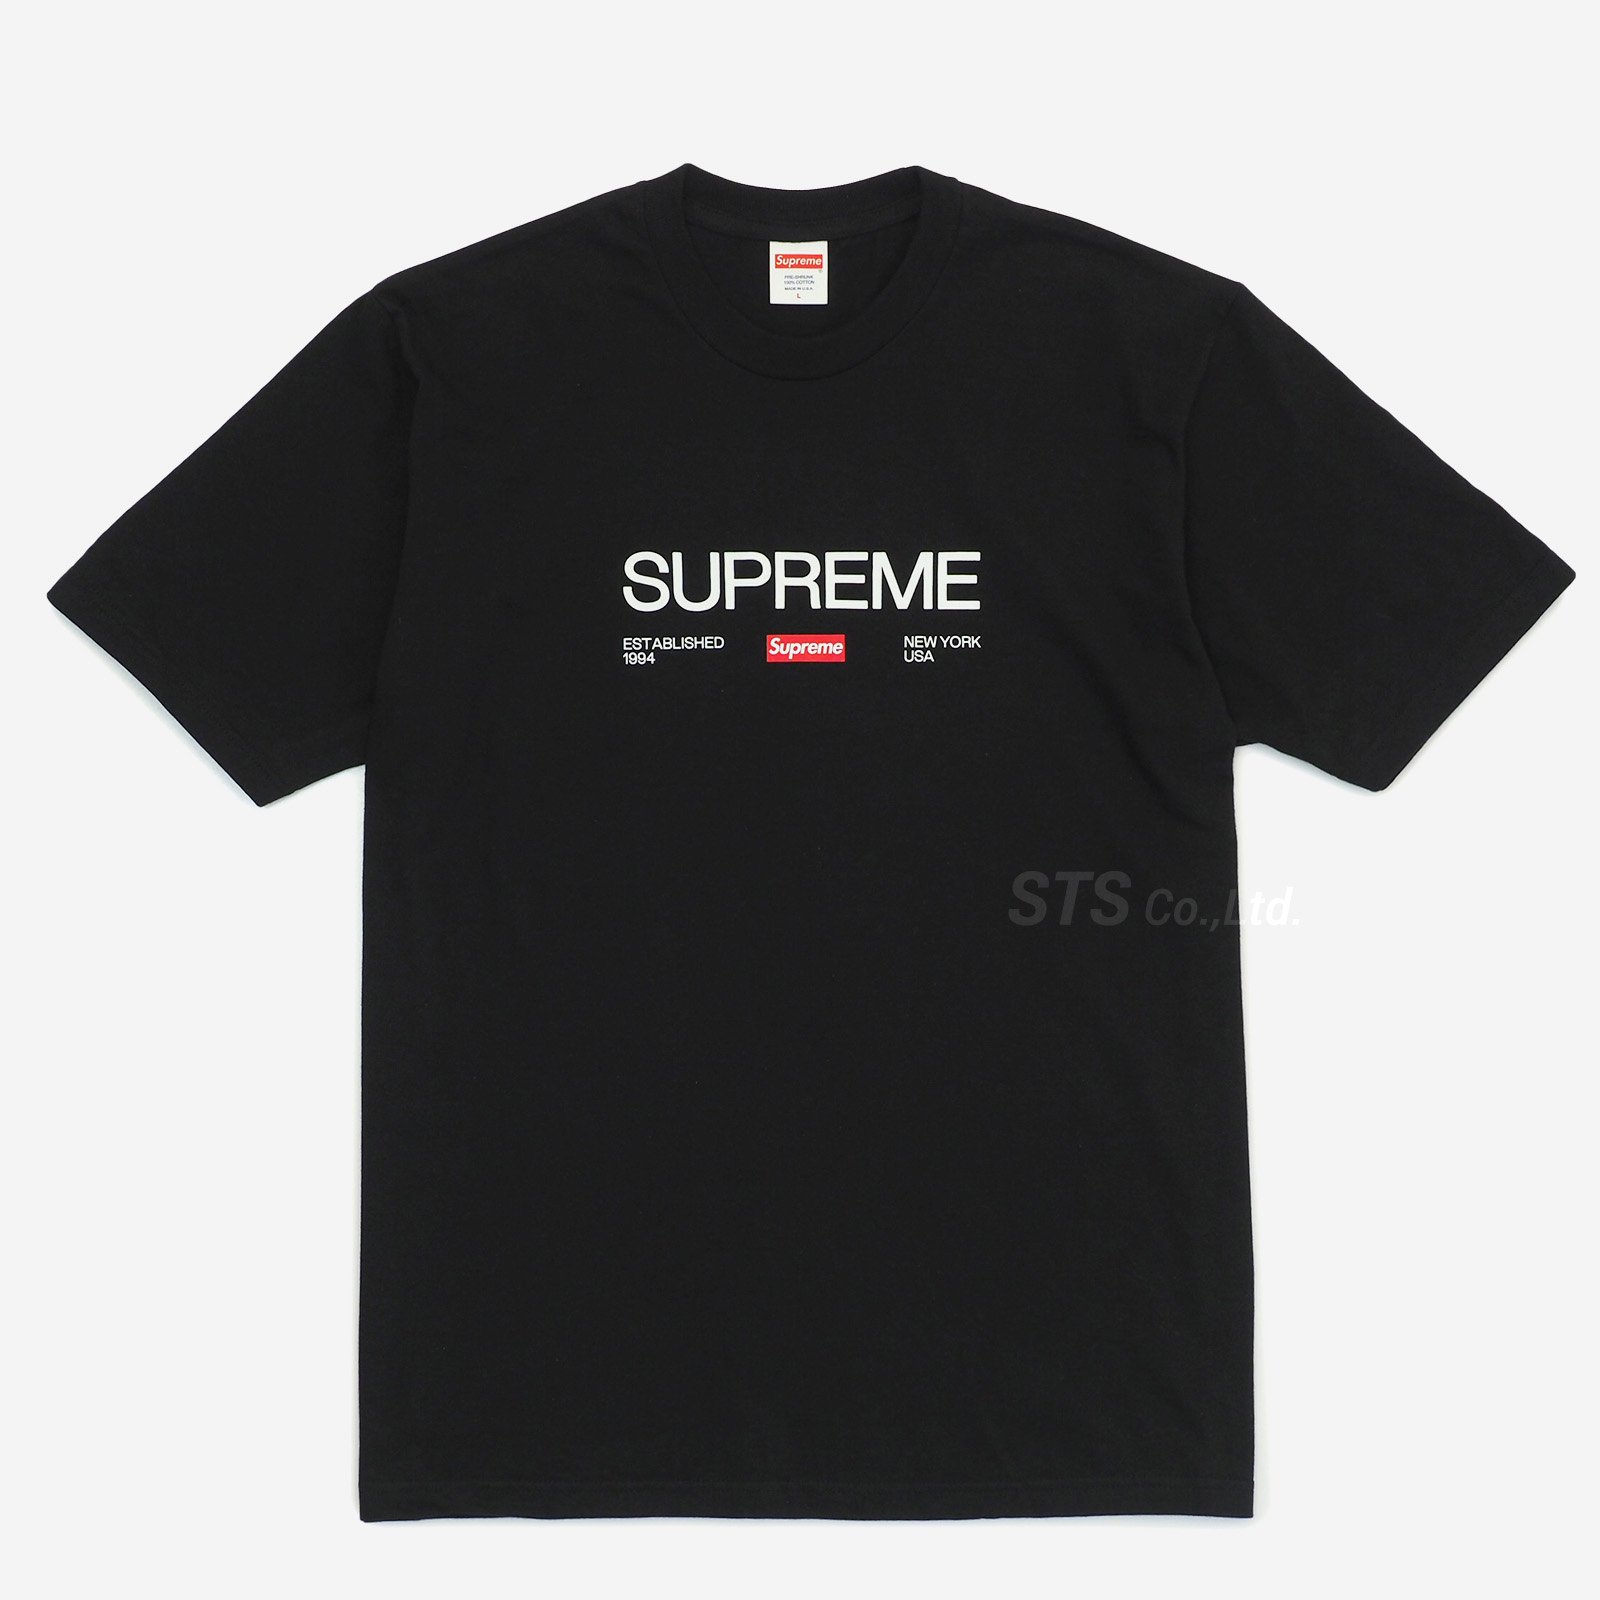 L送込!! Supreme Est.1994 Tシャツ黒